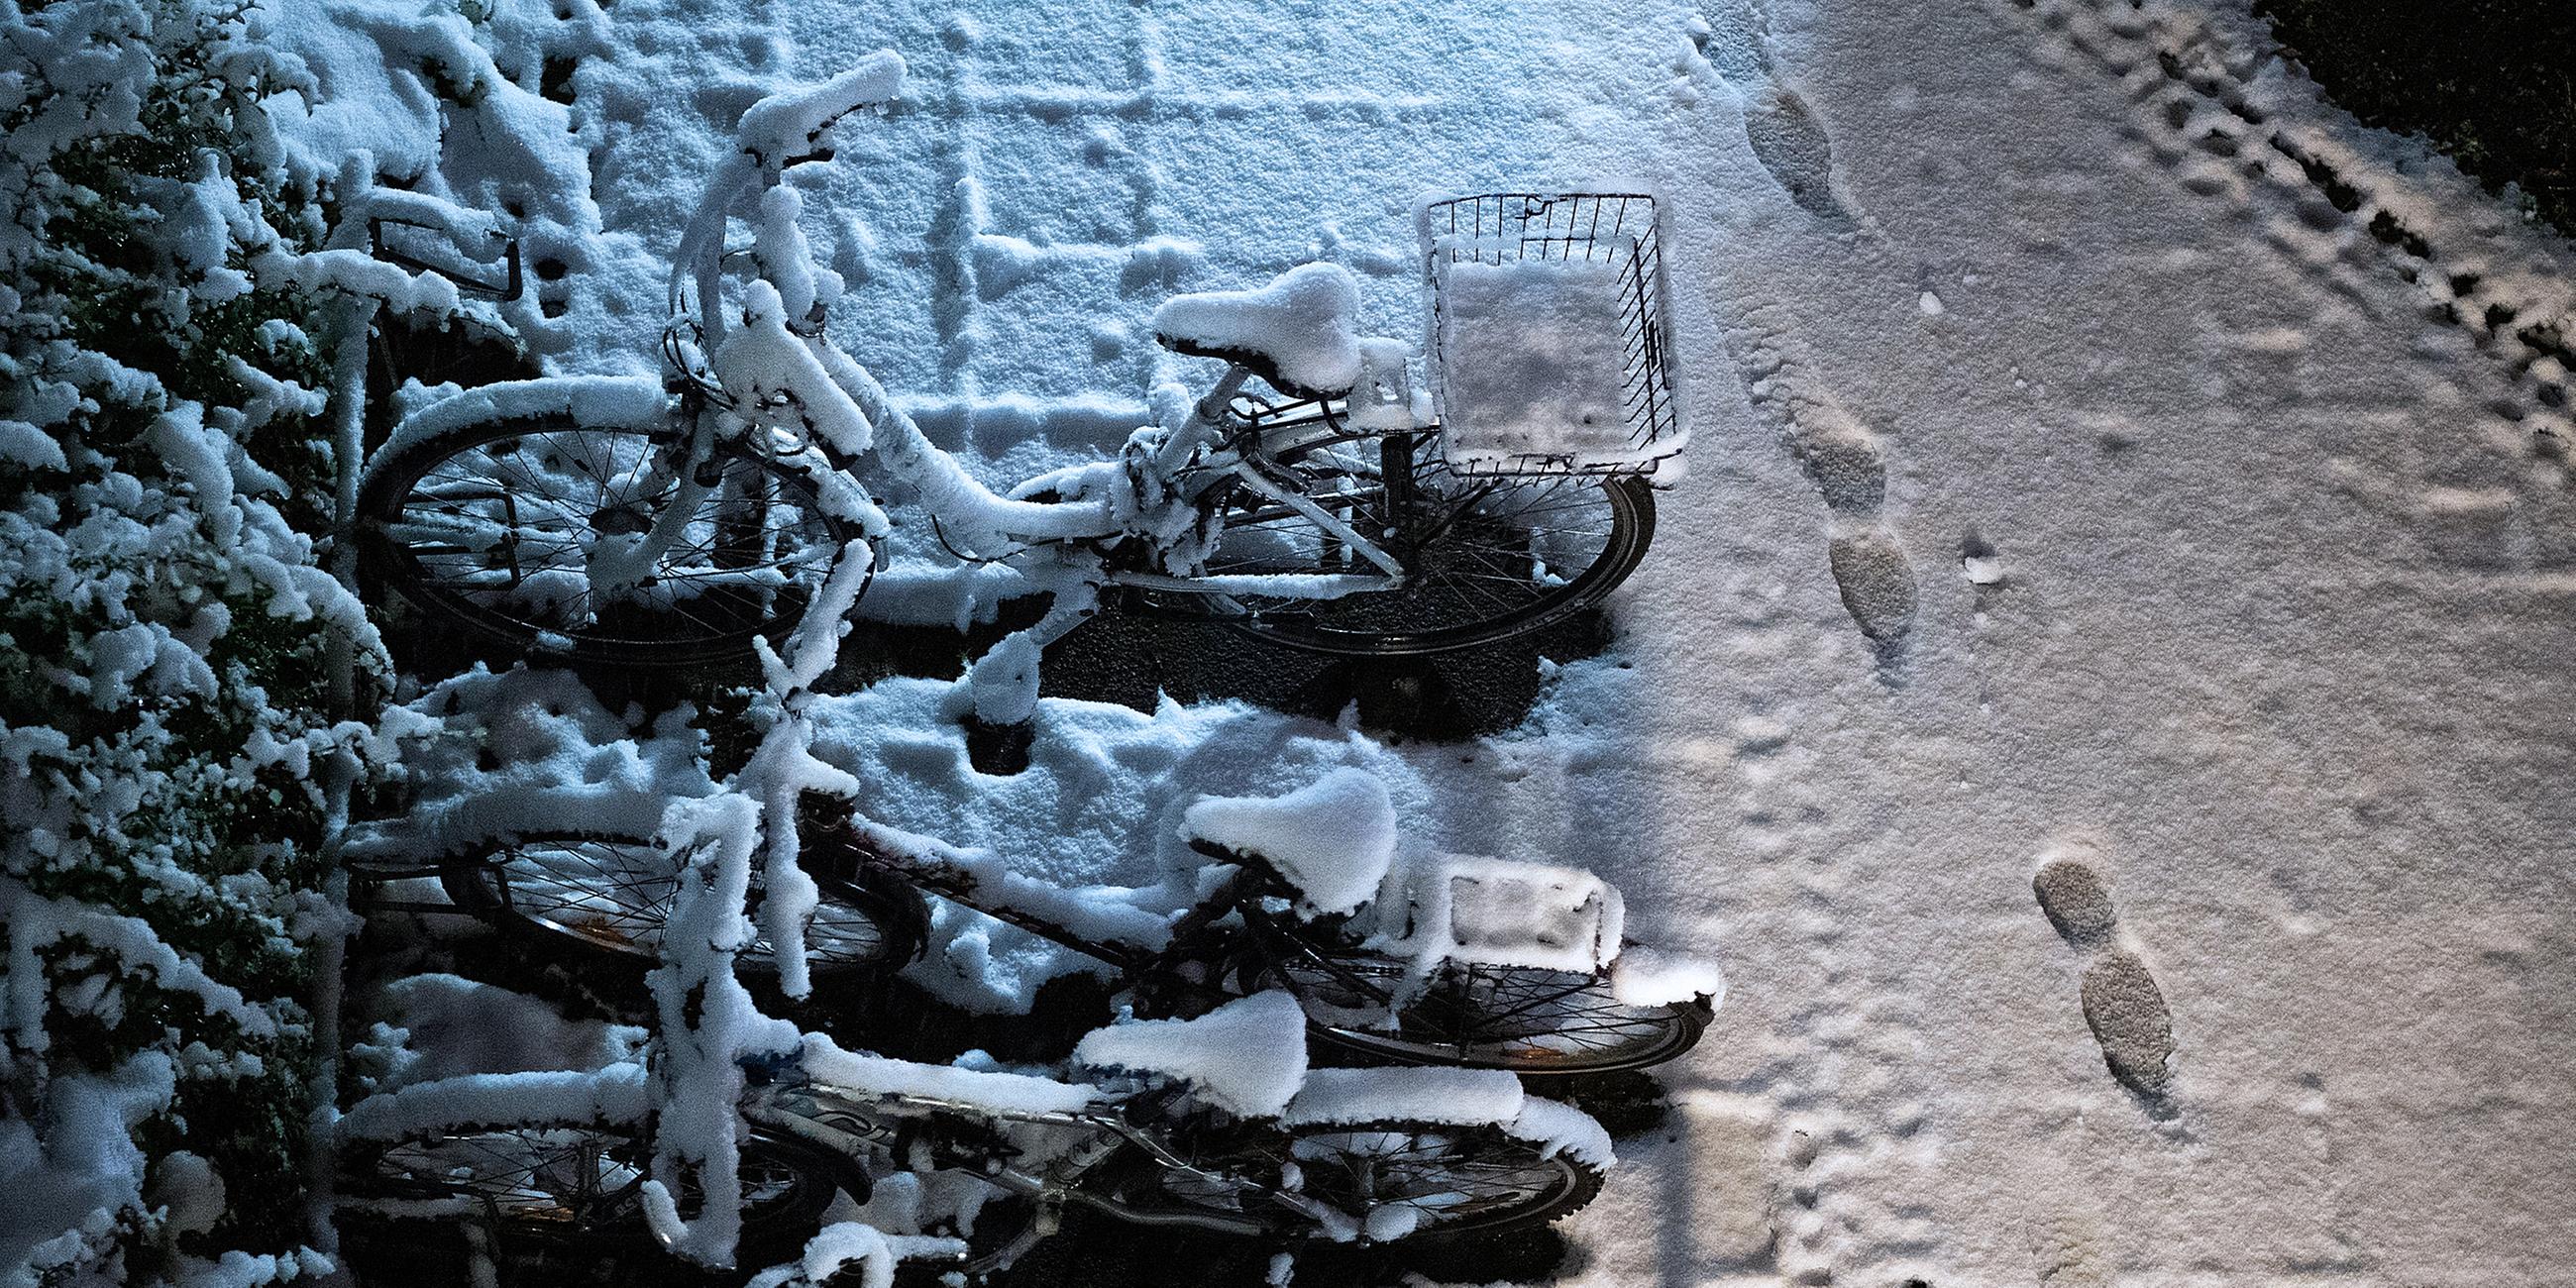 Fußspuren im frischen Schnee, aufgenommen am 27.11.2018